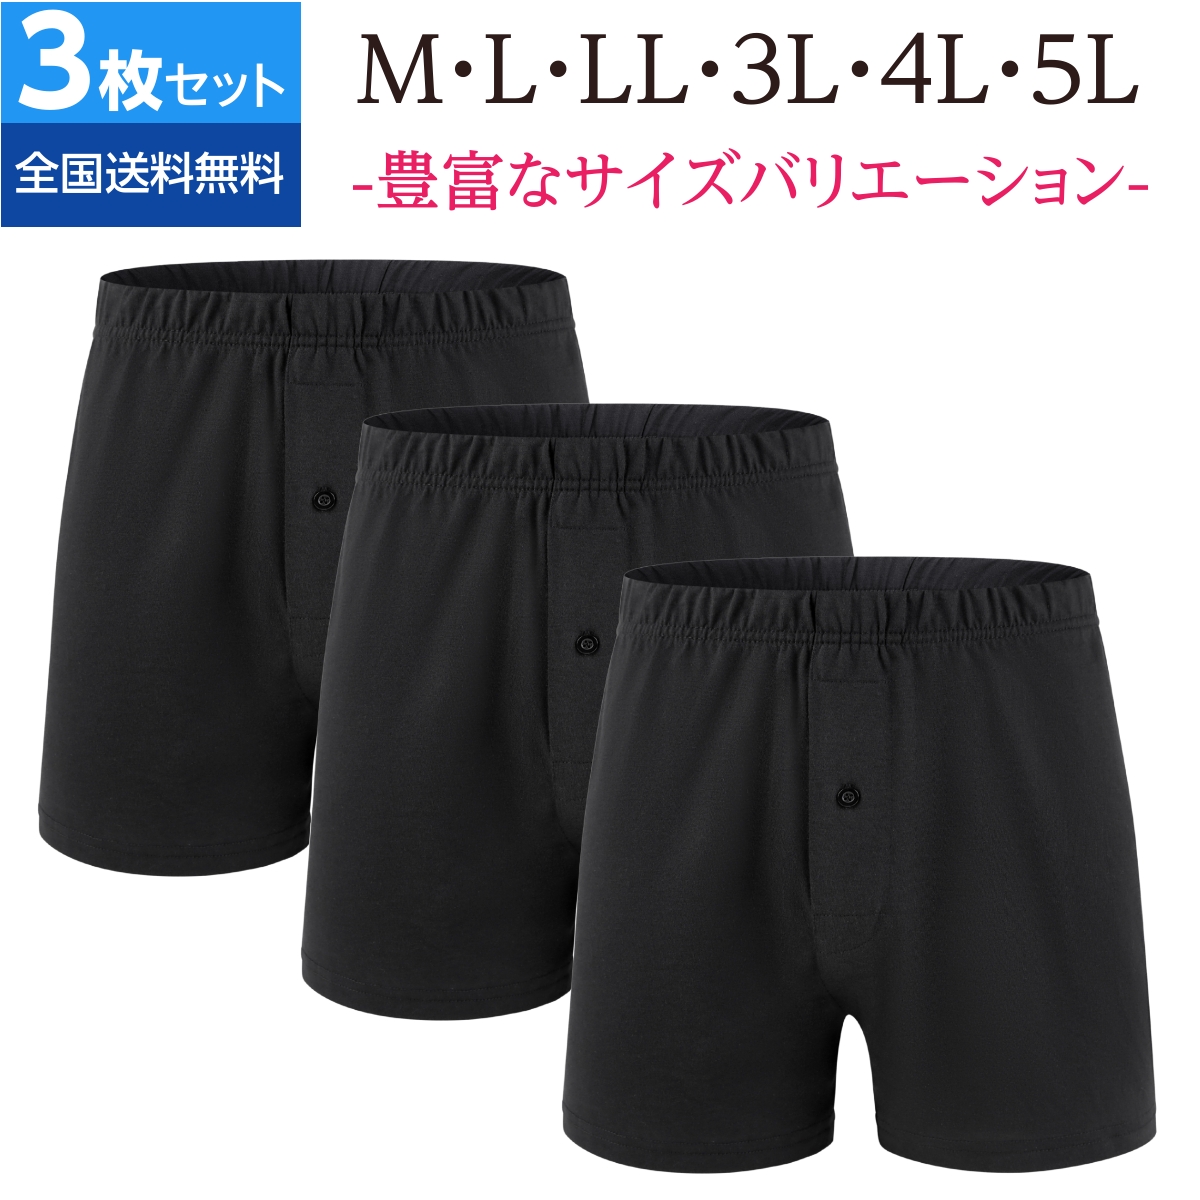 【公式ストア】mom21 トランクス  メンズ 下着 ニット パンツ 大きいサイズ 3枚セット 無地...